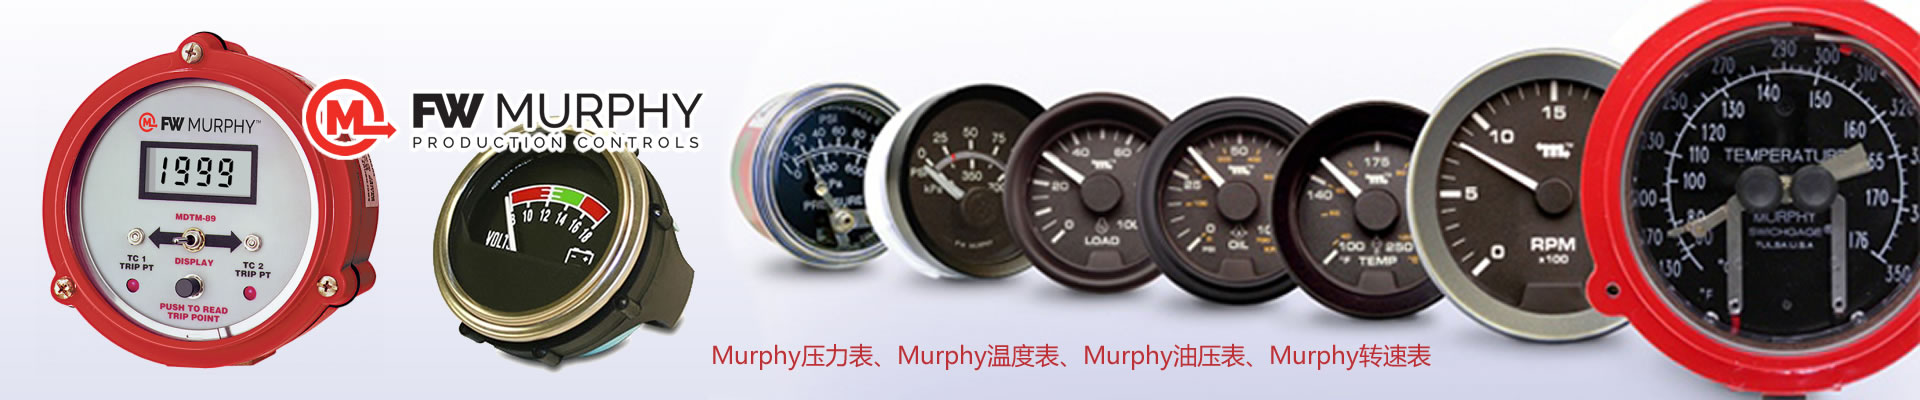 美国Murphy系列产品